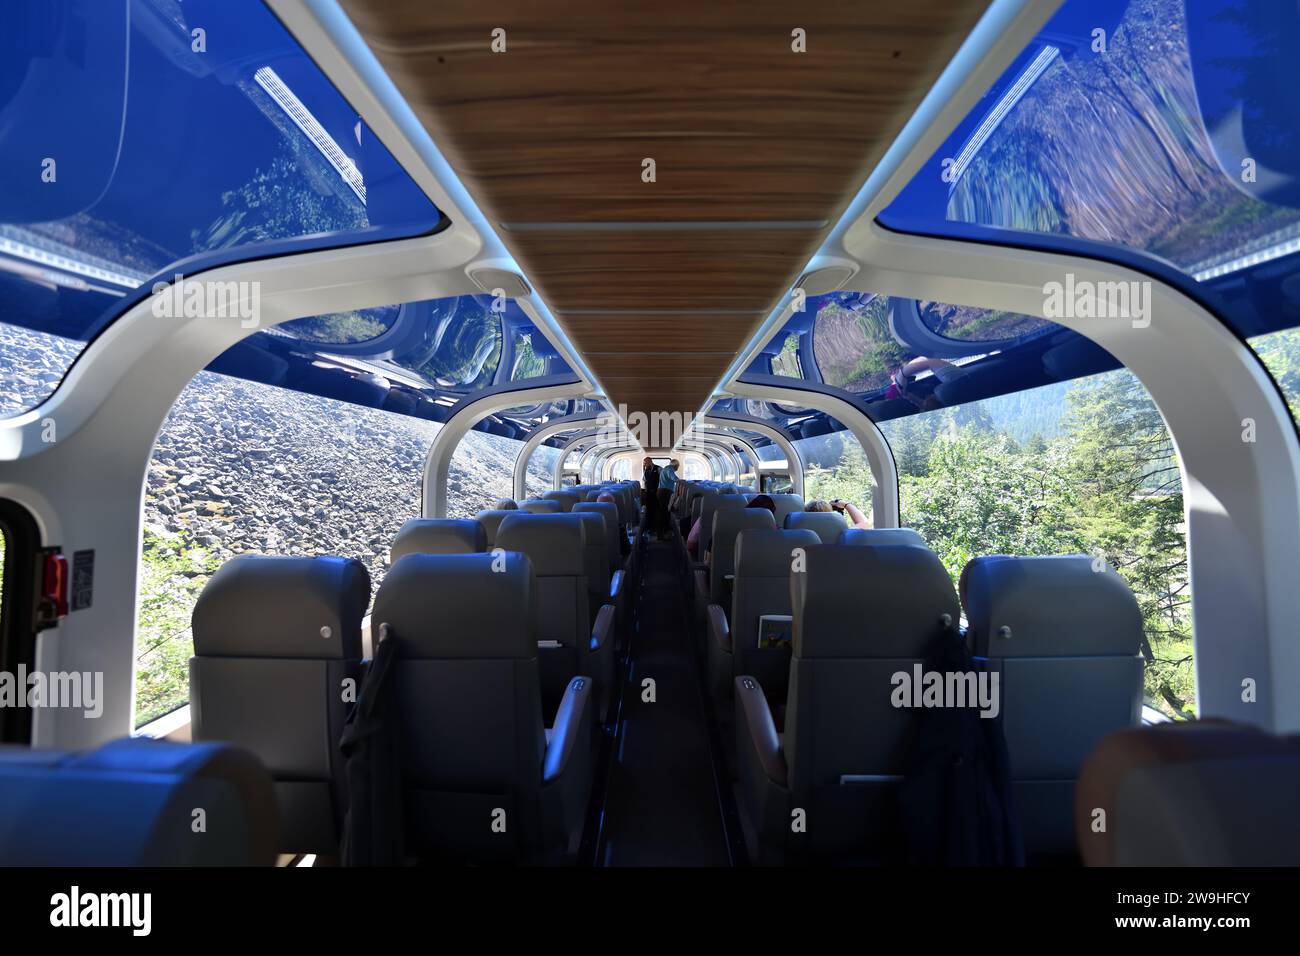 En el interior del carro de lujo de doble cubierta y el coche comedor del tren Rocky Mountaineer con techo de vidrio para la observación extendida Foto de stock